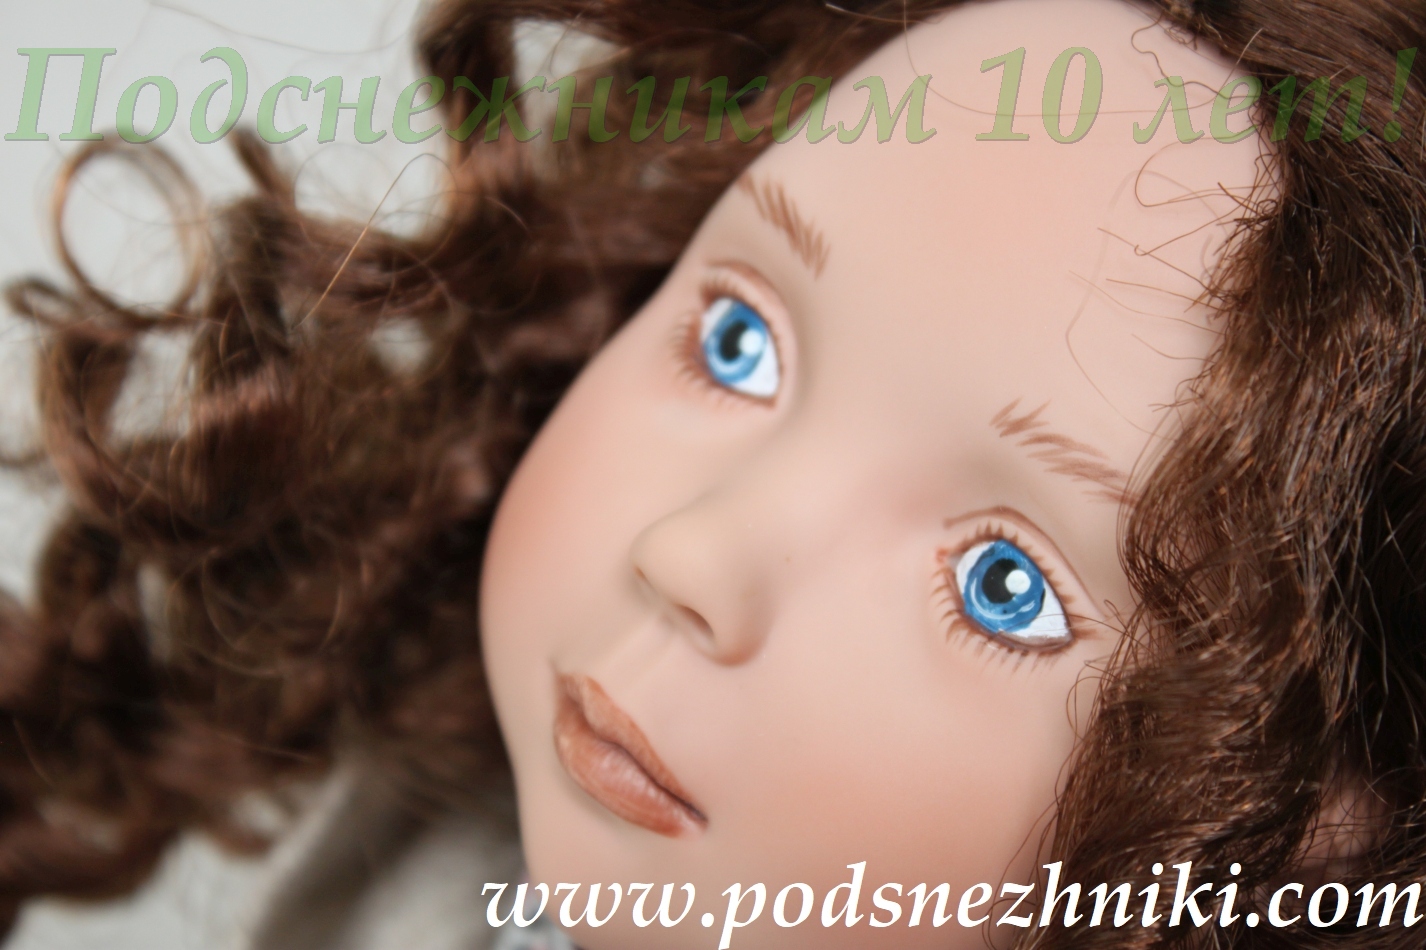 Юбилейная куколка от Zwergnase для Подснежников